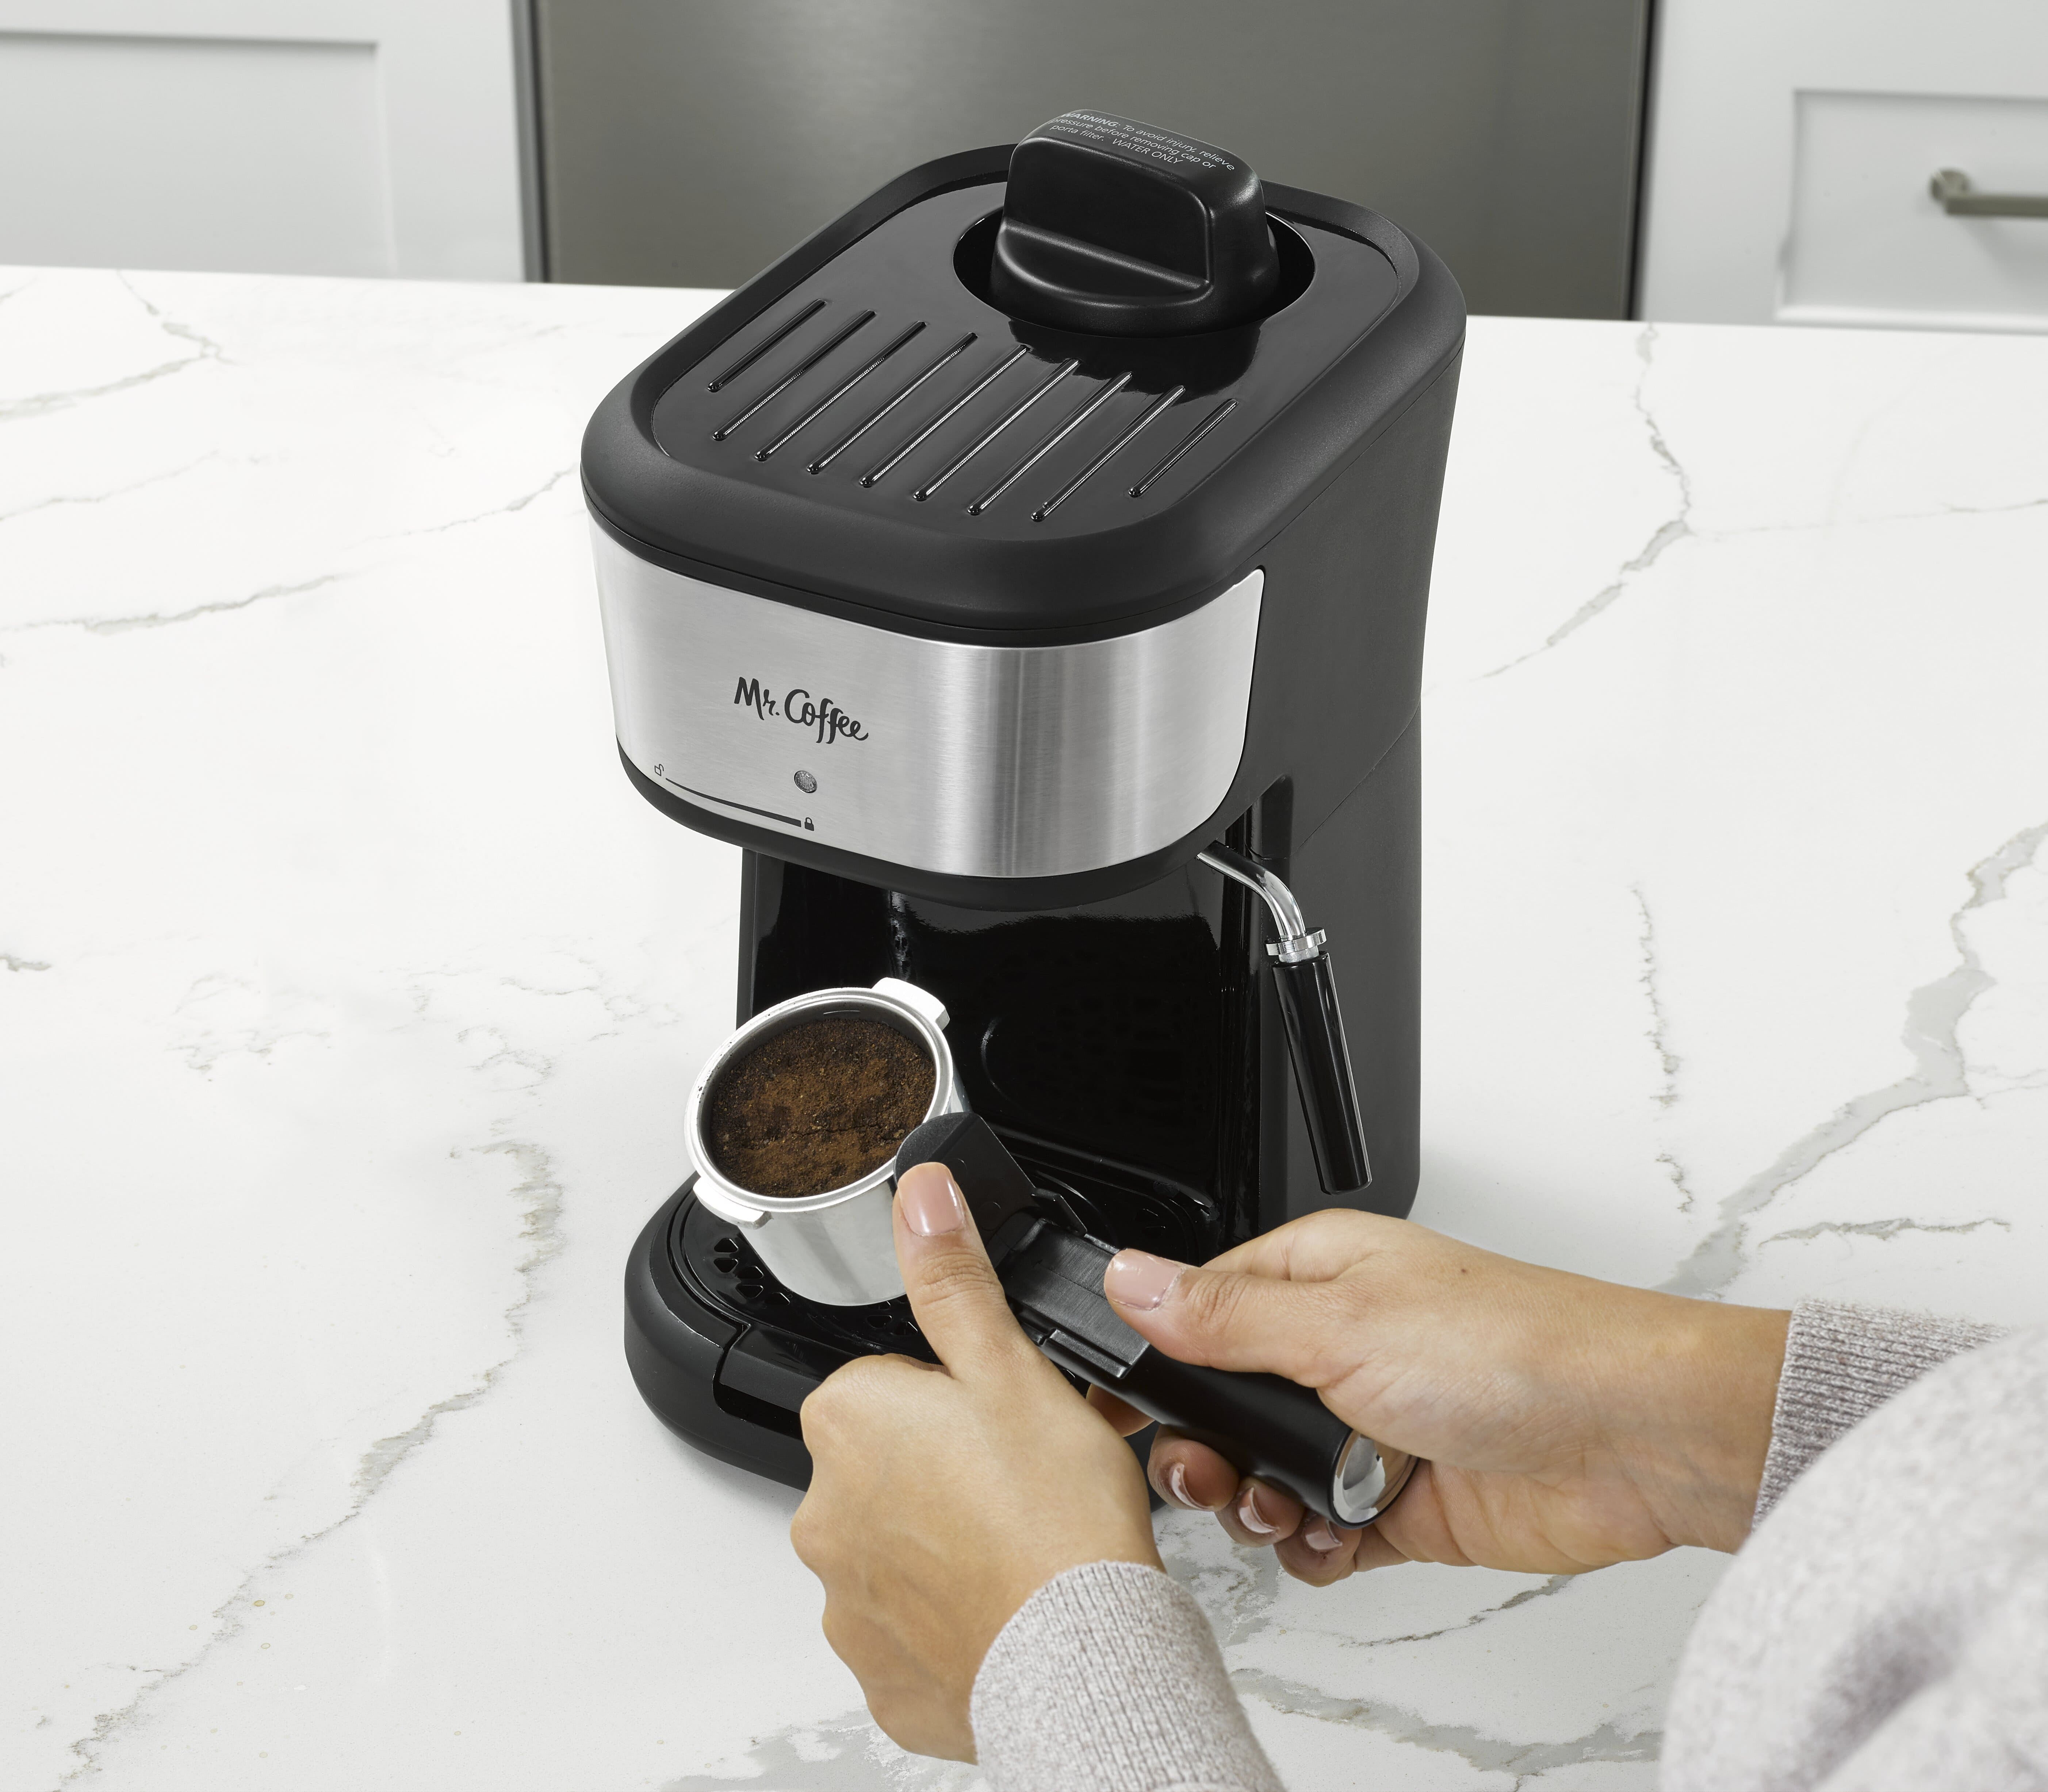 Mr. Coffee - Espresso and Cappuccino Maker Latte Milk Steamer ECMP40